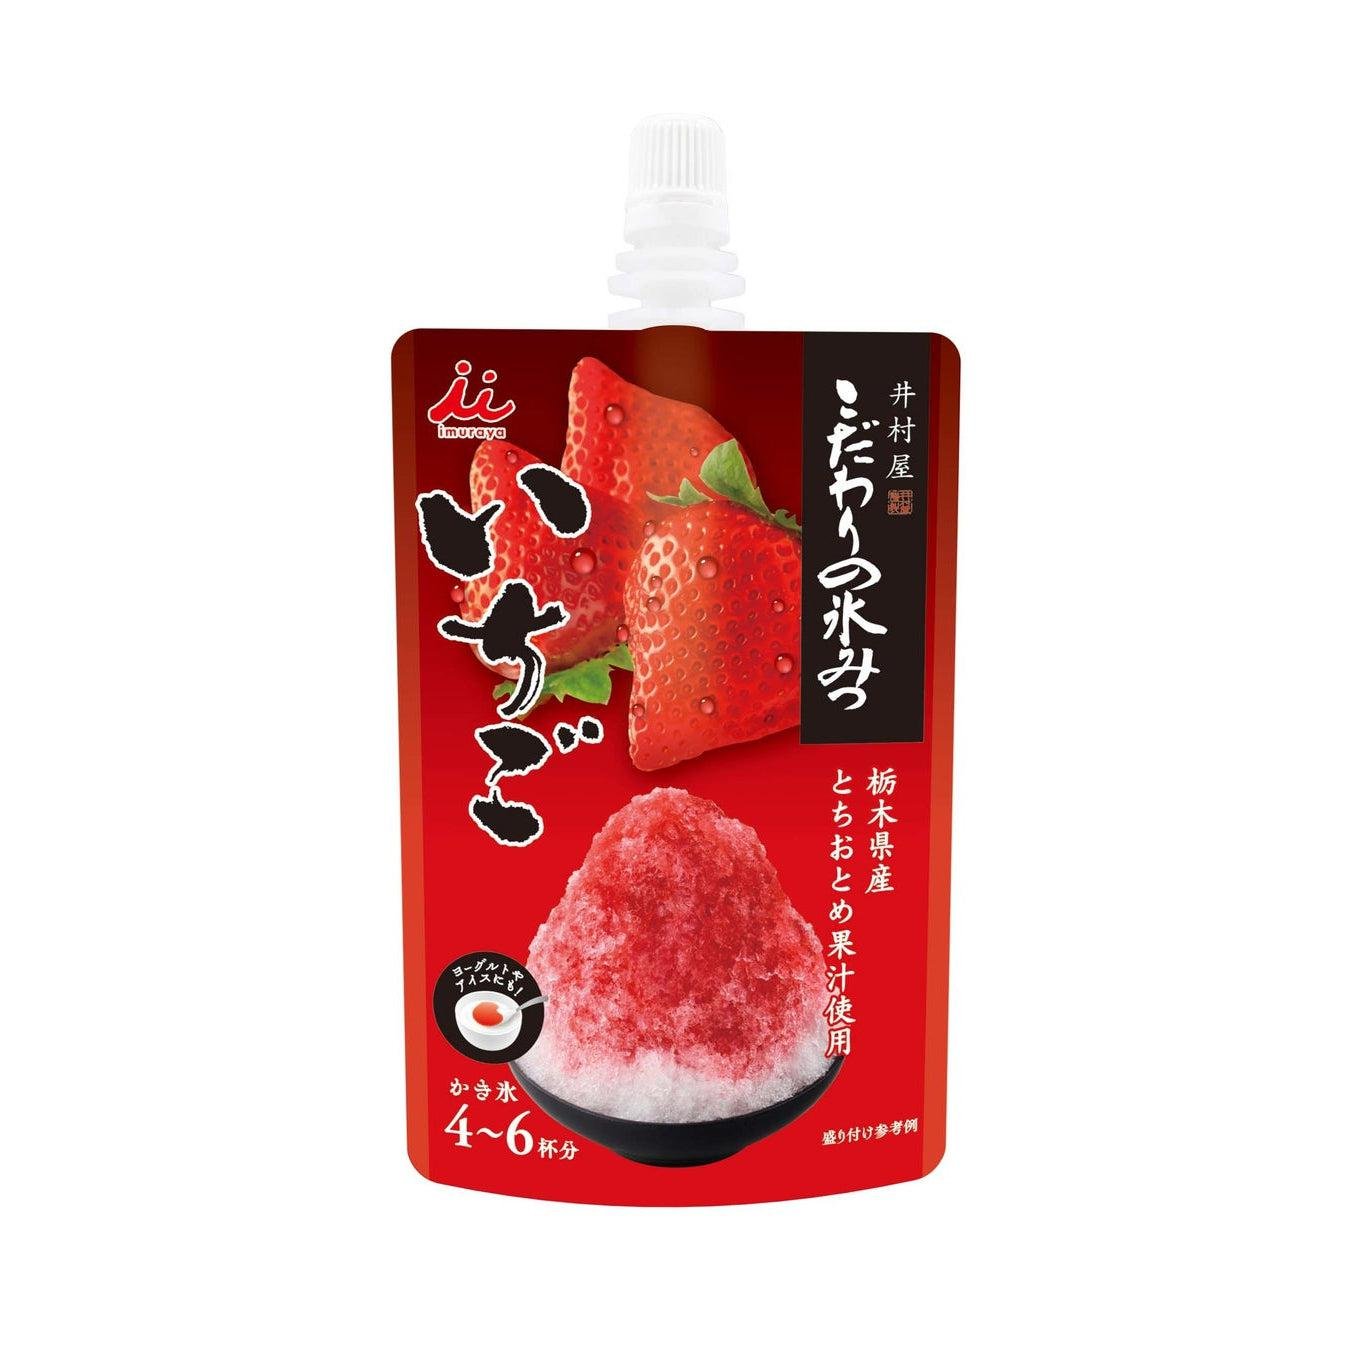 P-1-IMYA-KKGSYR-SW150-Imuraya Ichigo Kakigori Syrup Strawberry Shaved Ice Syrup 150g.jpg